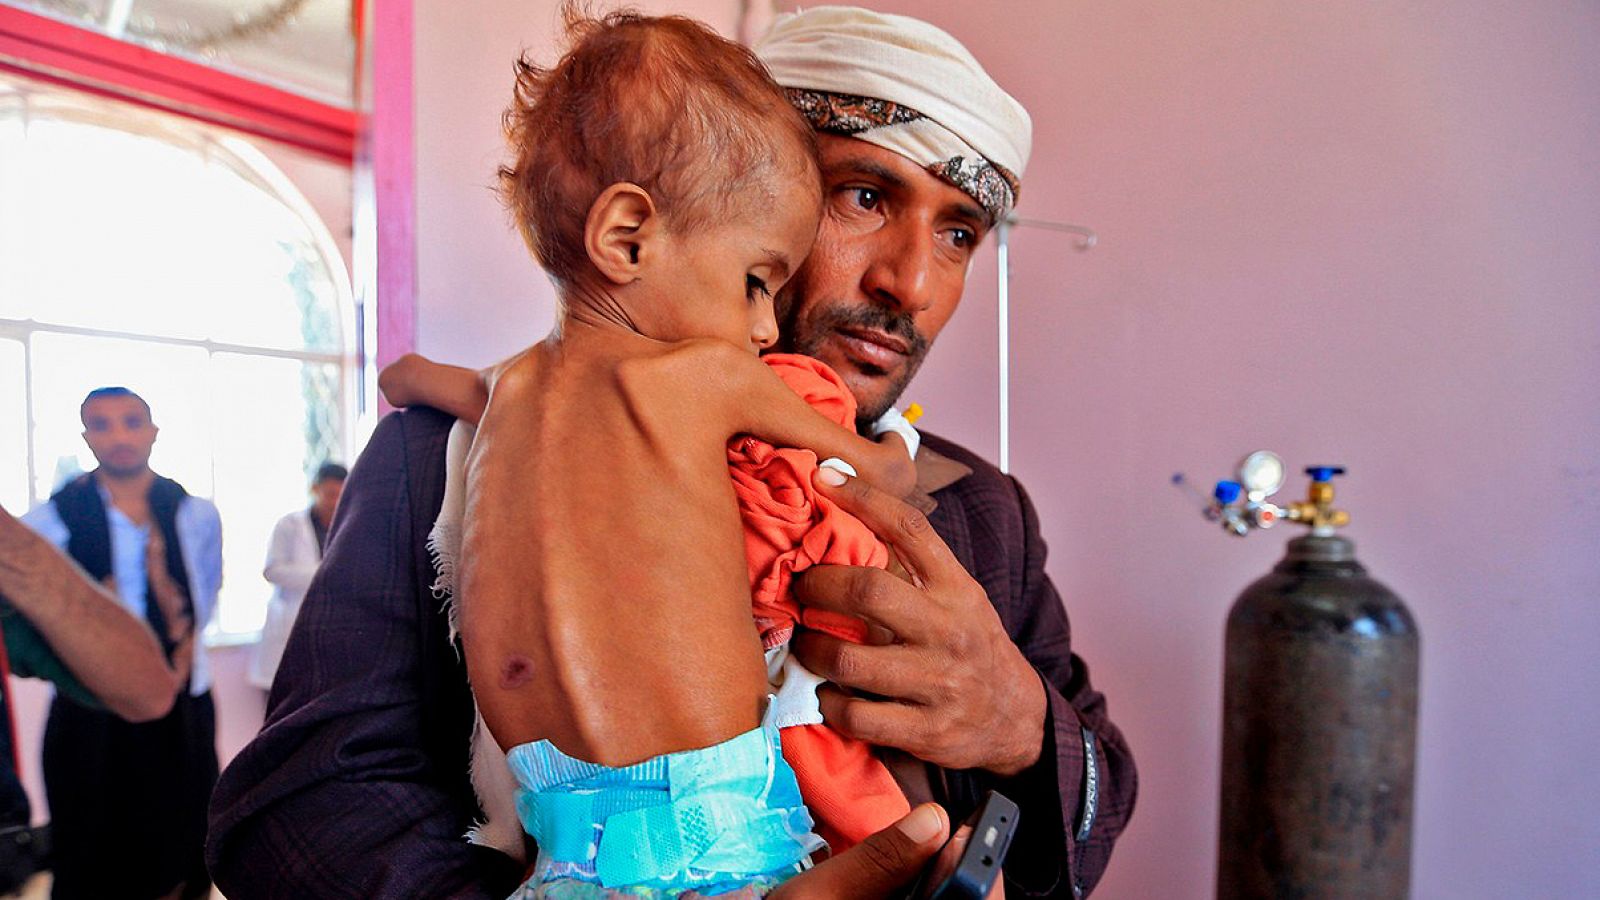 Imagen de archivo: un hombre lleva a su hijo malnutrido en brazos en un hospital de Saná, Yemen Foto: Mohammed HUWAIS / AFP